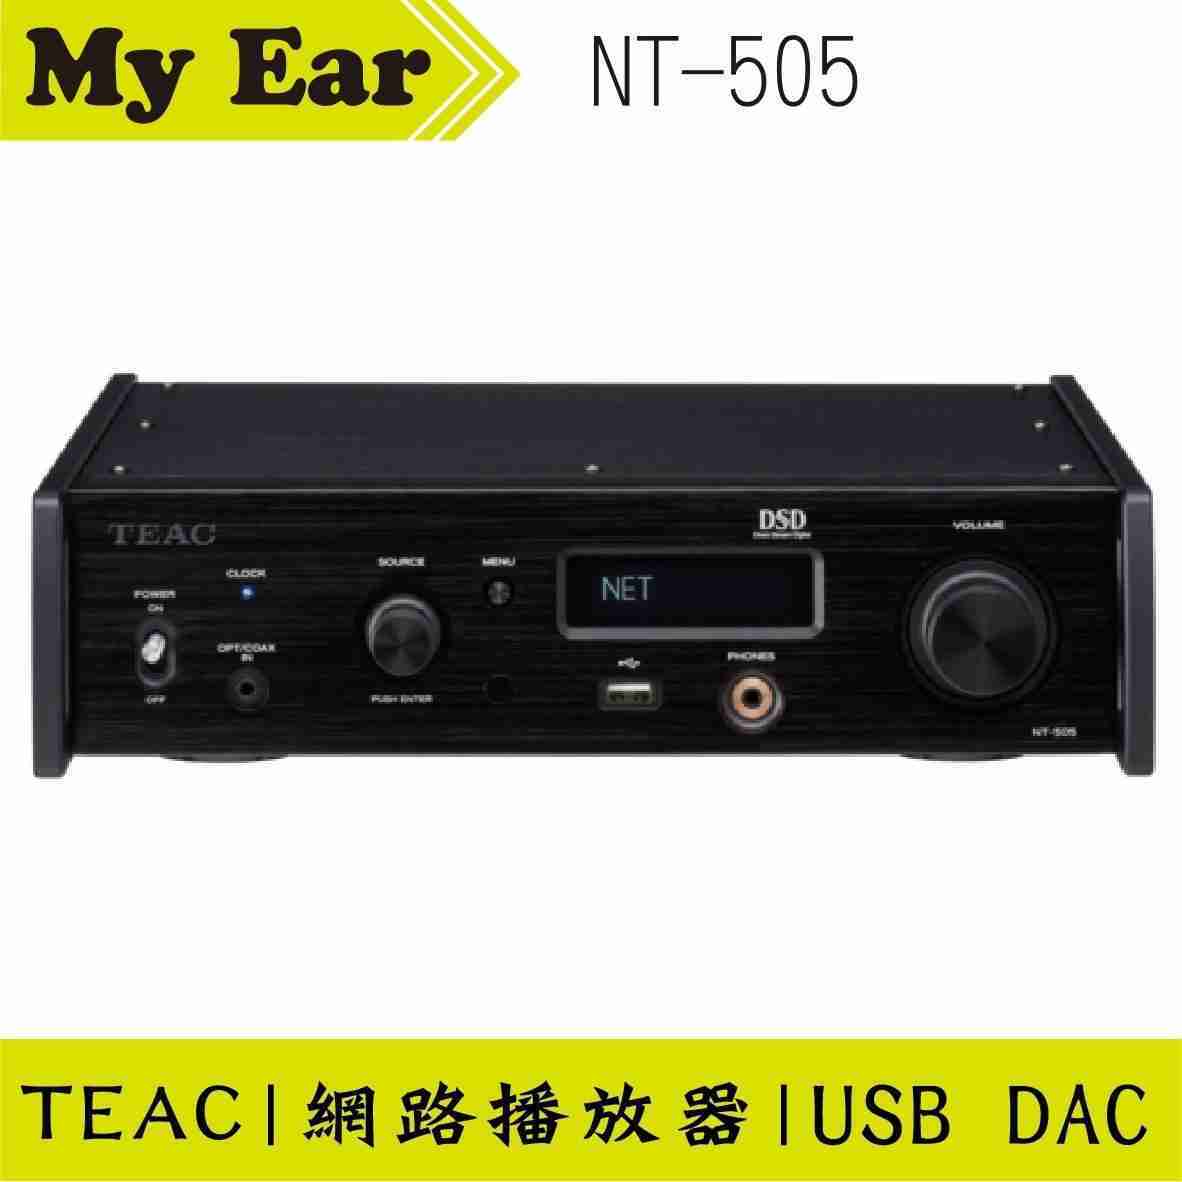 TEAC NT-505 USB DAC 網路串流播放器 黑色 | My Ear 耳機專門店